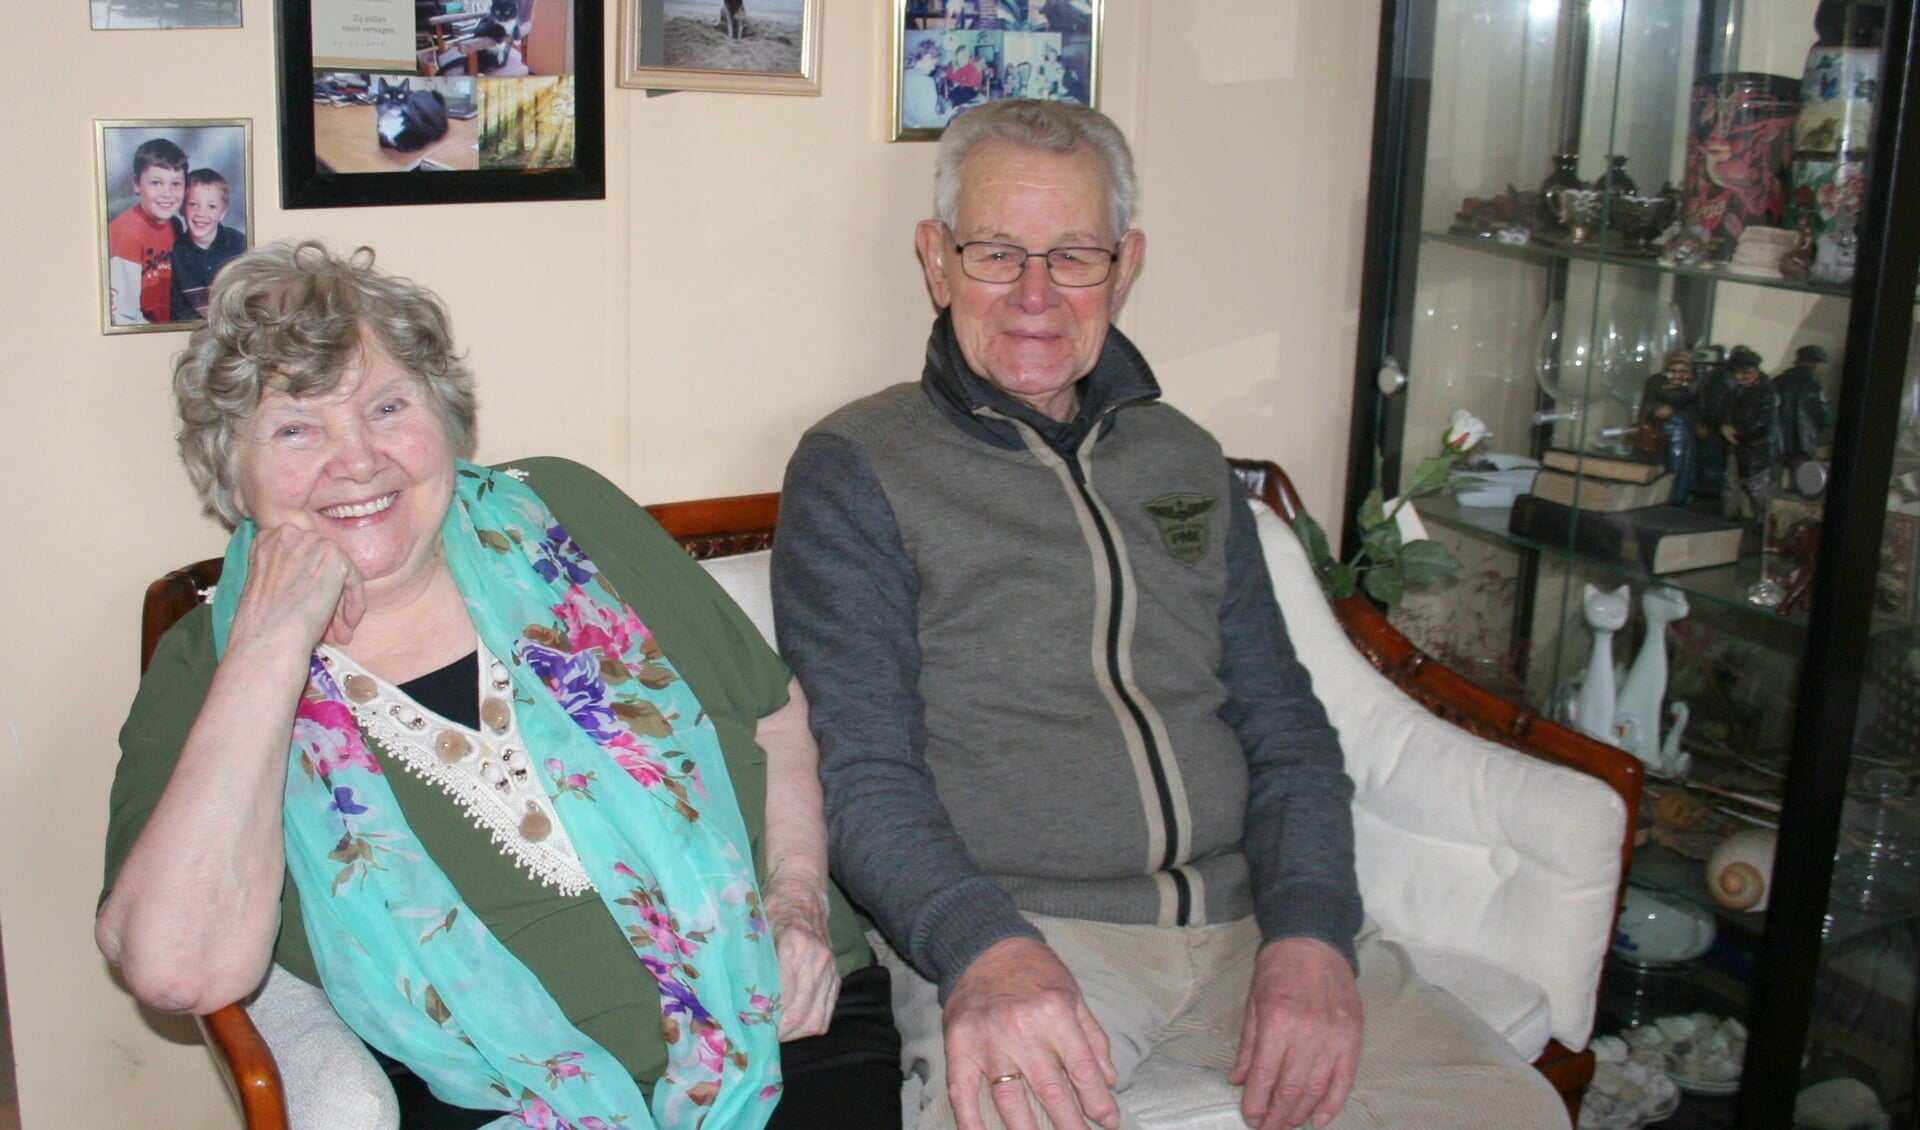 Het echtpaar Kuilder - ter Wielen vierde deze week een mooi jubileum met hun 60-jarig huwelijk.